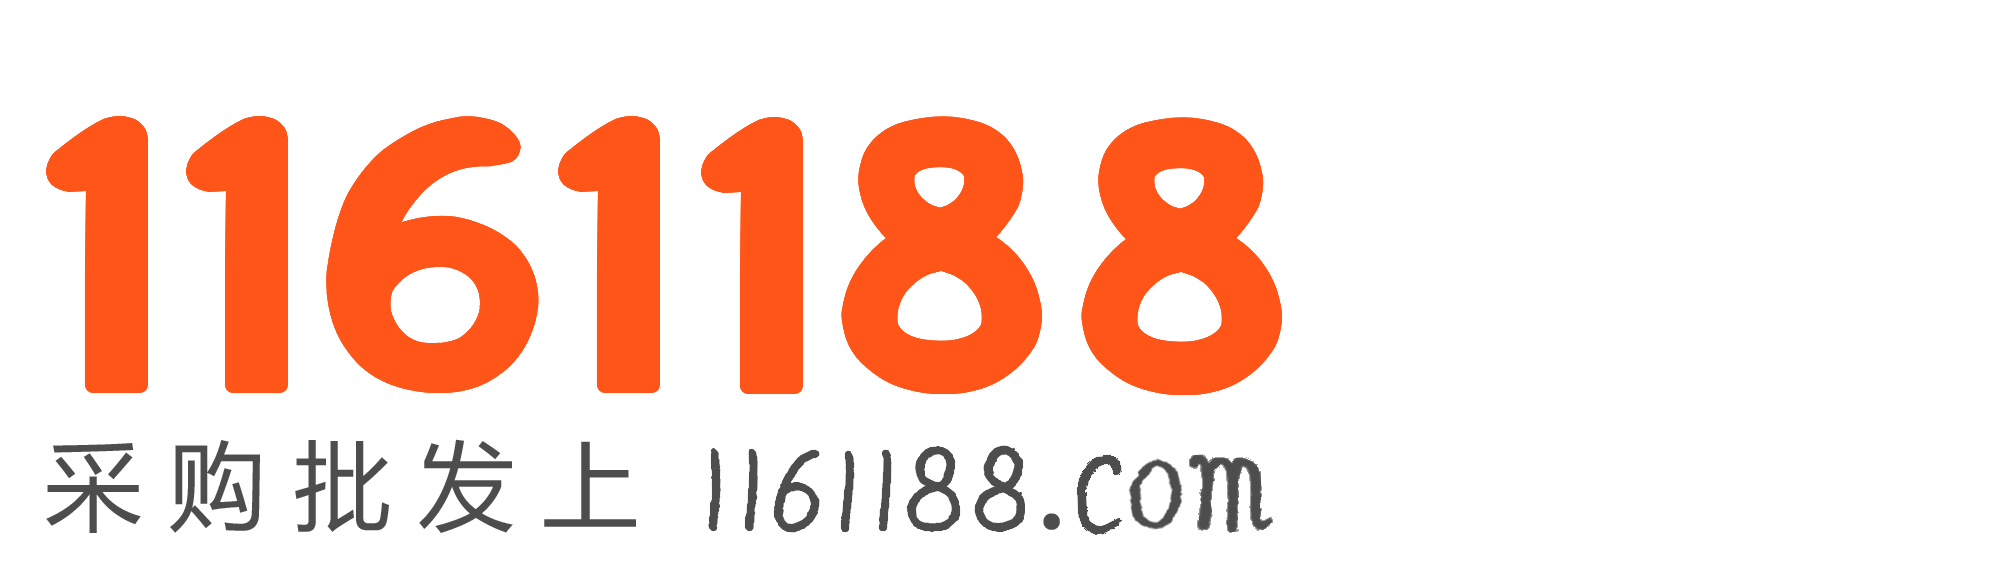 1161188 商机网-采购批发就上1161188.com